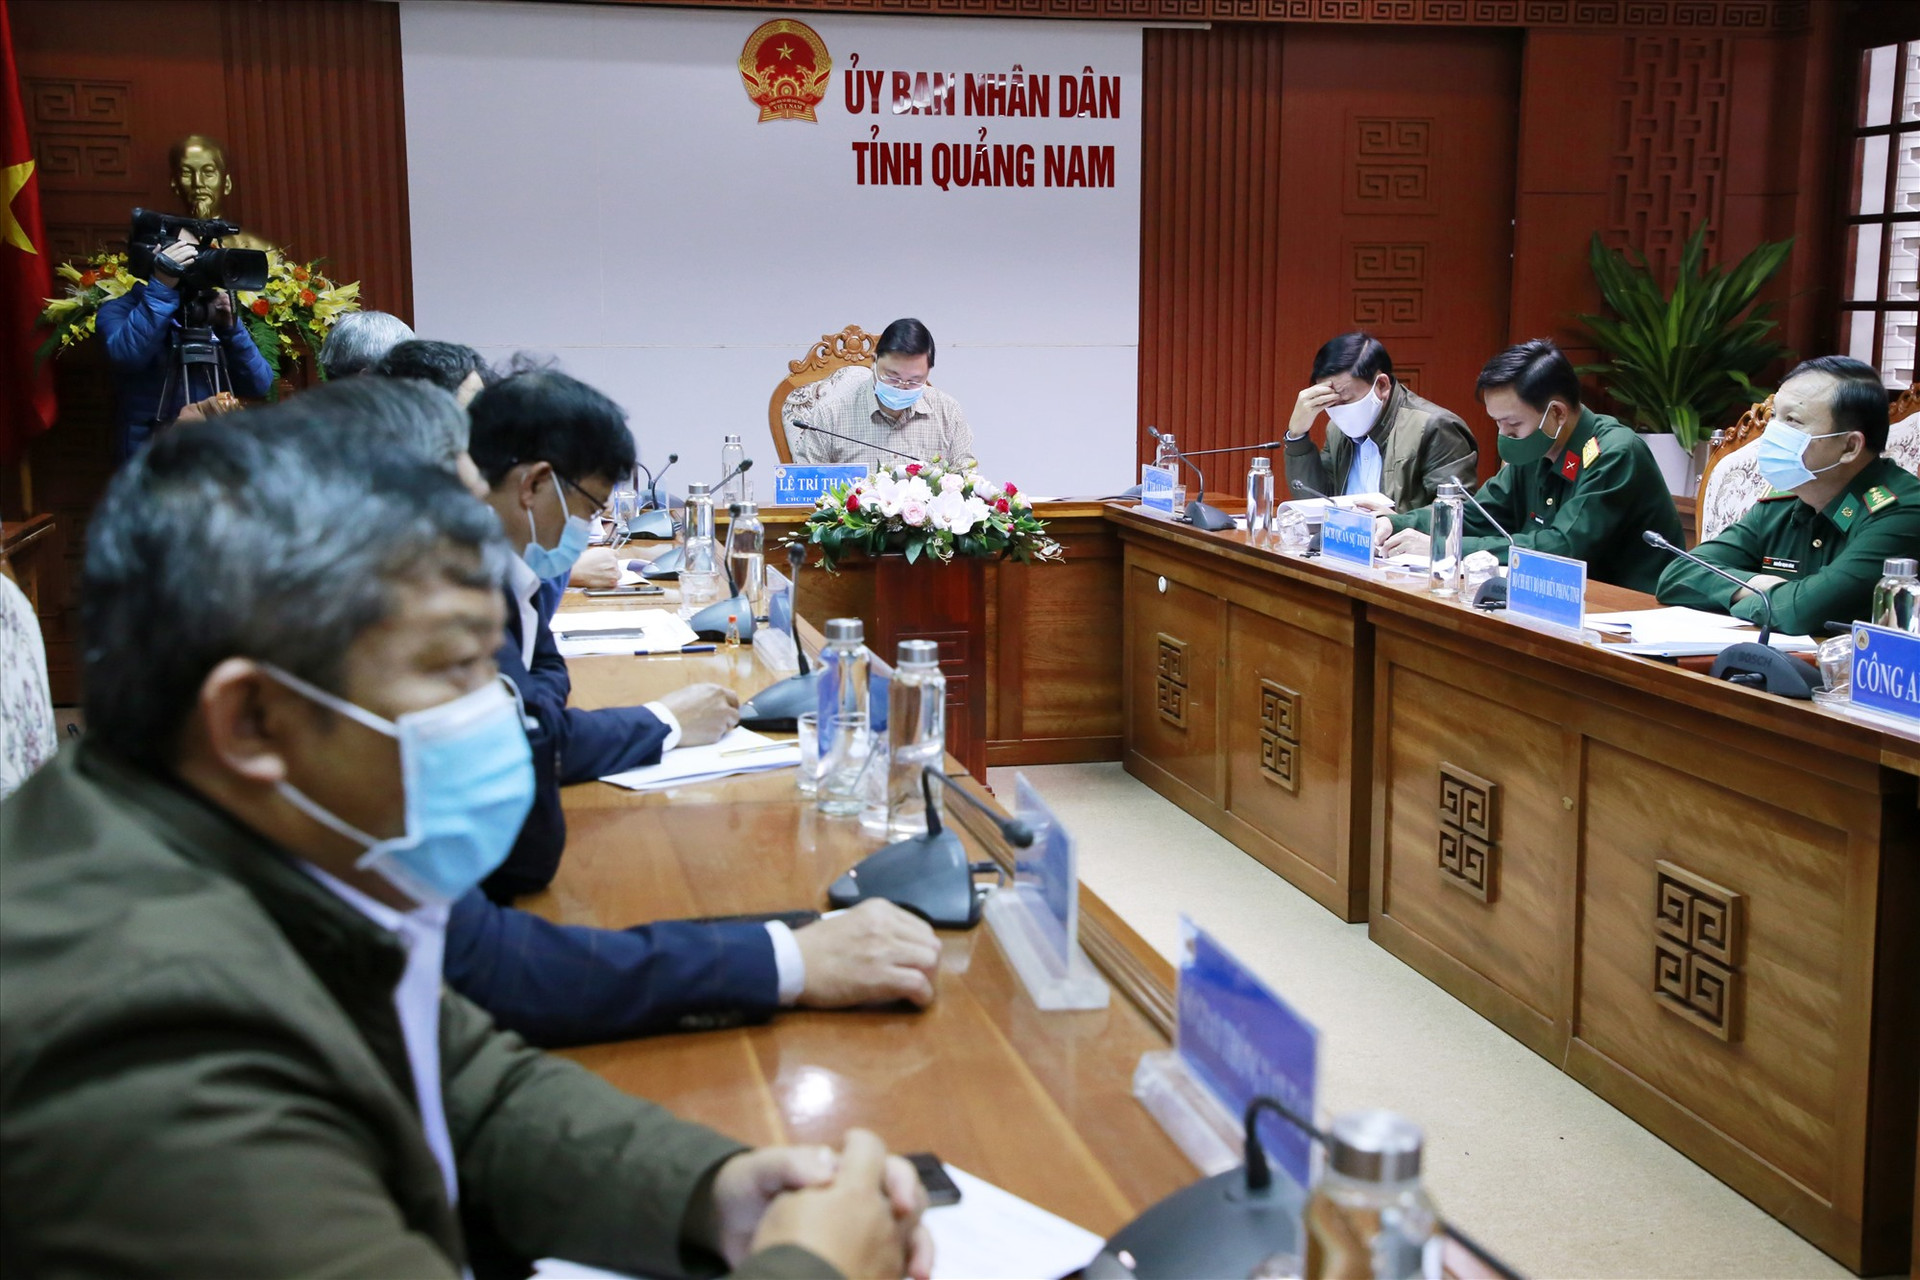 Chủ tịch UBND tỉnh Lê Trí Thanh cùng các đại biểu dự điểm cầu hội nghị tại UBND tỉnh. Ảnh: T.C